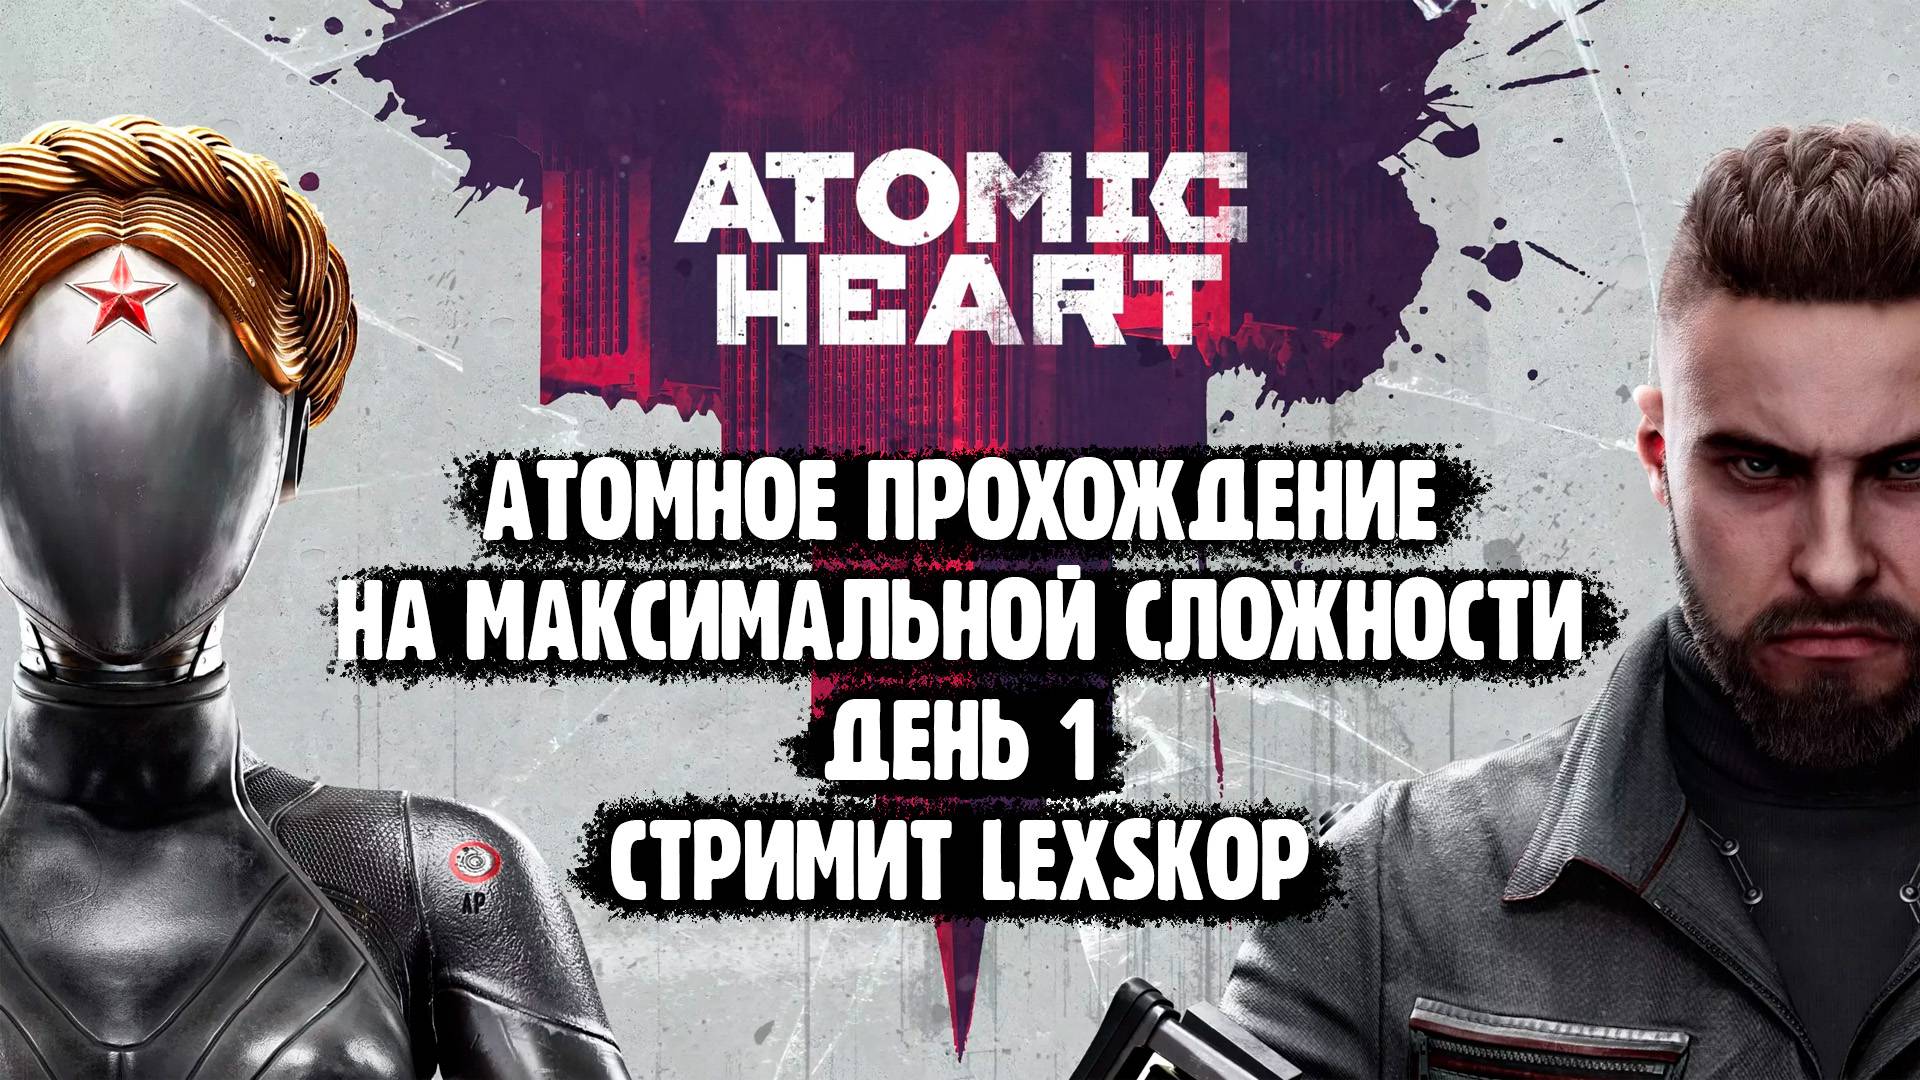 Atomic Heart | День 1 | Максимальная сложность | Атомное прохождение